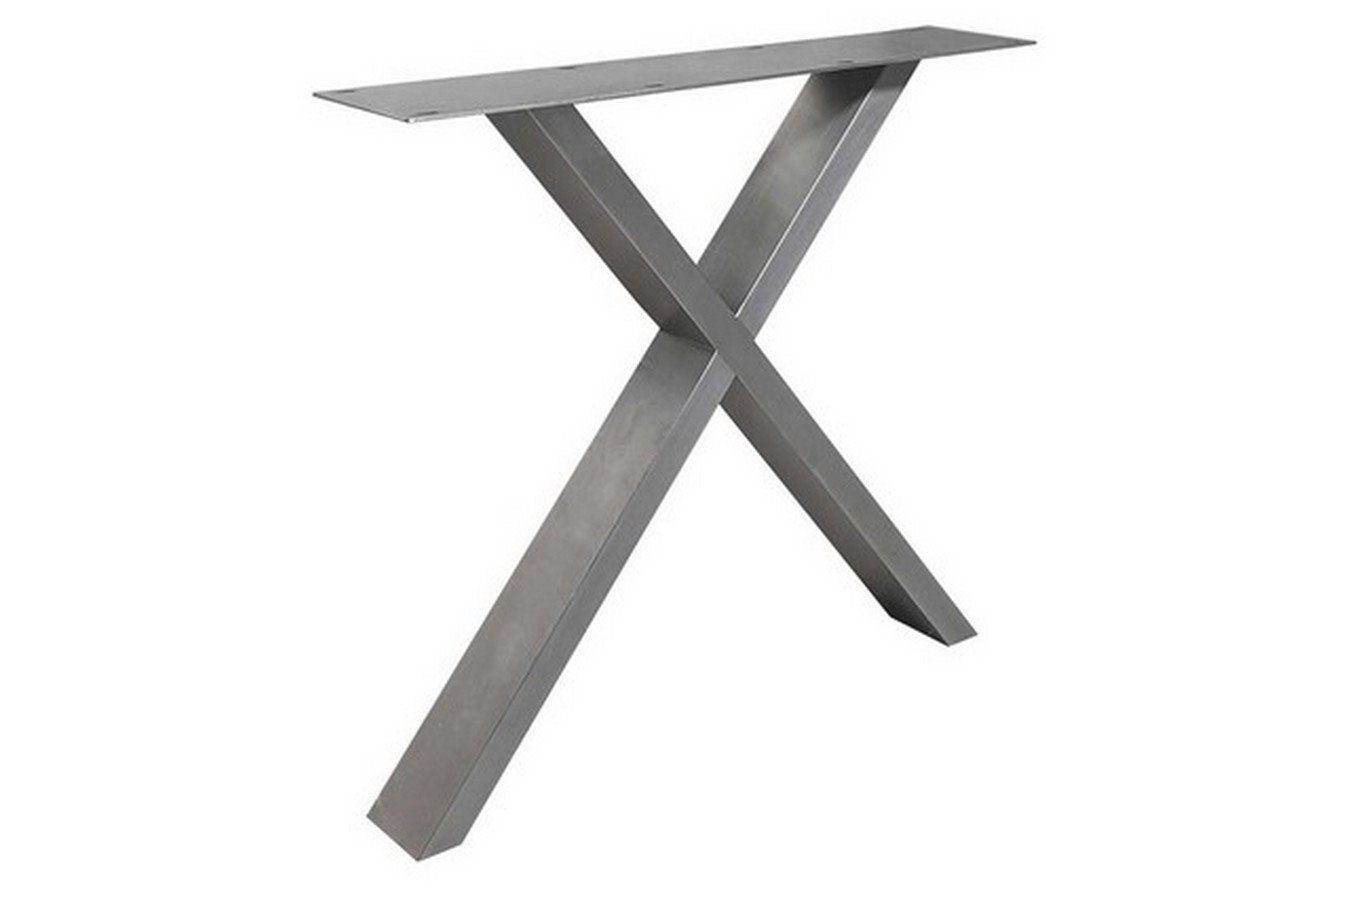 [Sofortige Lieferung! Bis zum halben Preis! ] Tischhelden Tischbein Tischgestell X Set 2er Edelstahl